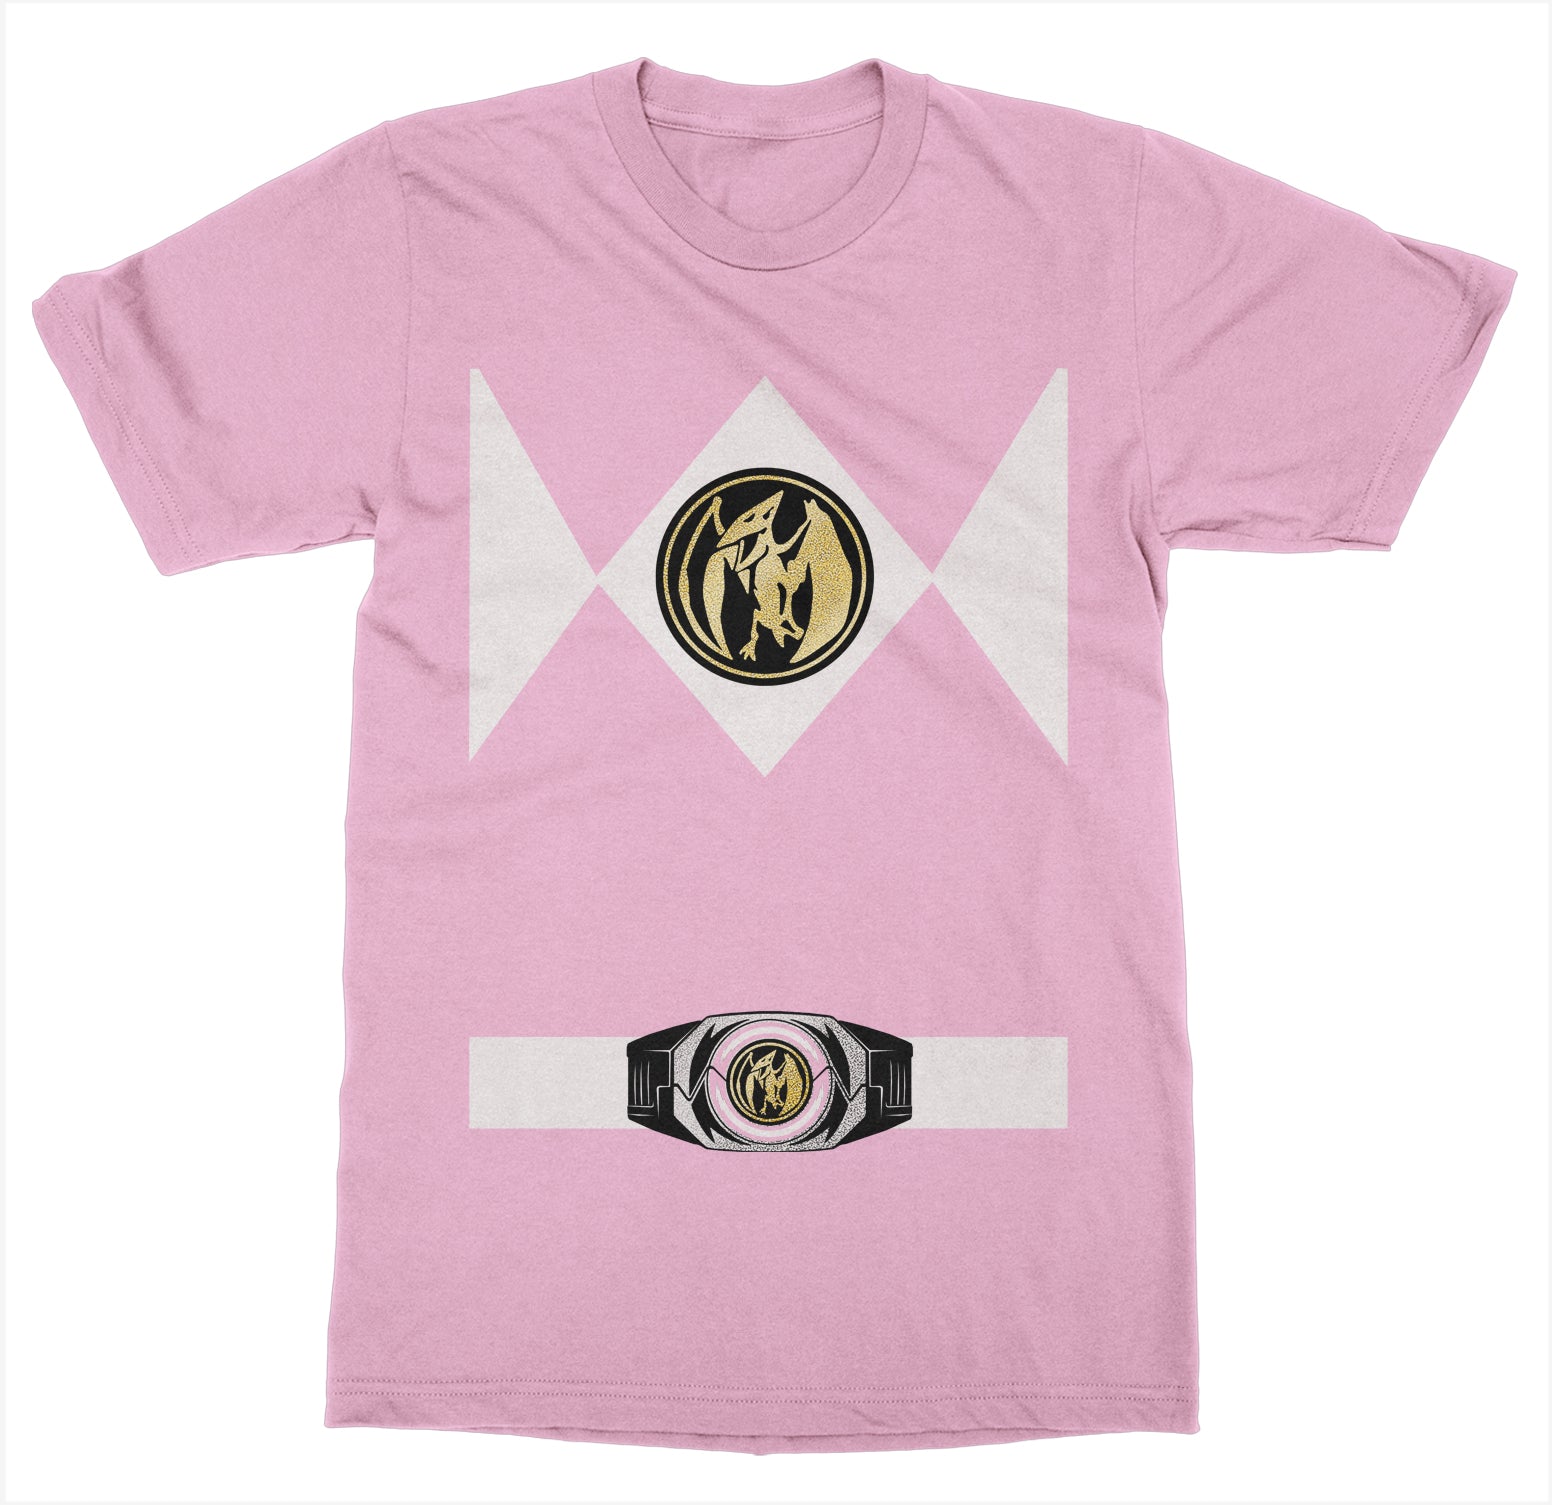 pink power ranger t shirt